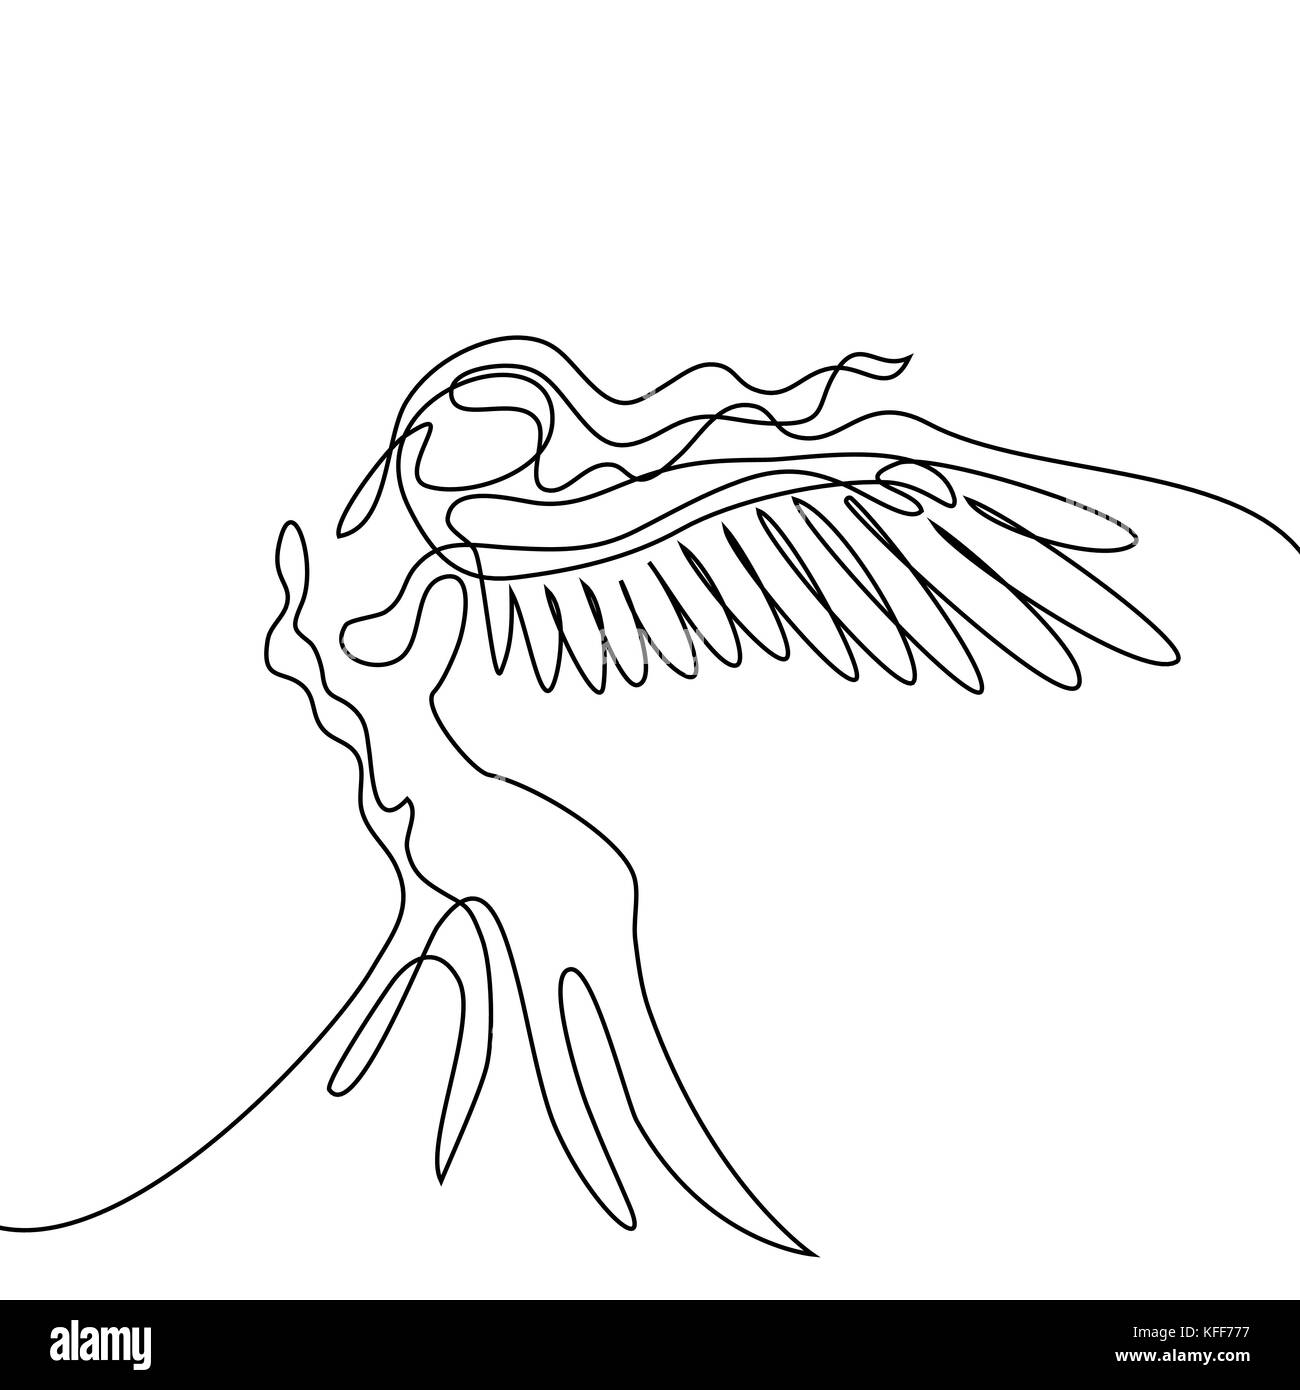 Durchgehende Linie zeichnen. Abstract Portrait von Engel Frau mit Flügeln. Vector Illustration. Stock Vektor